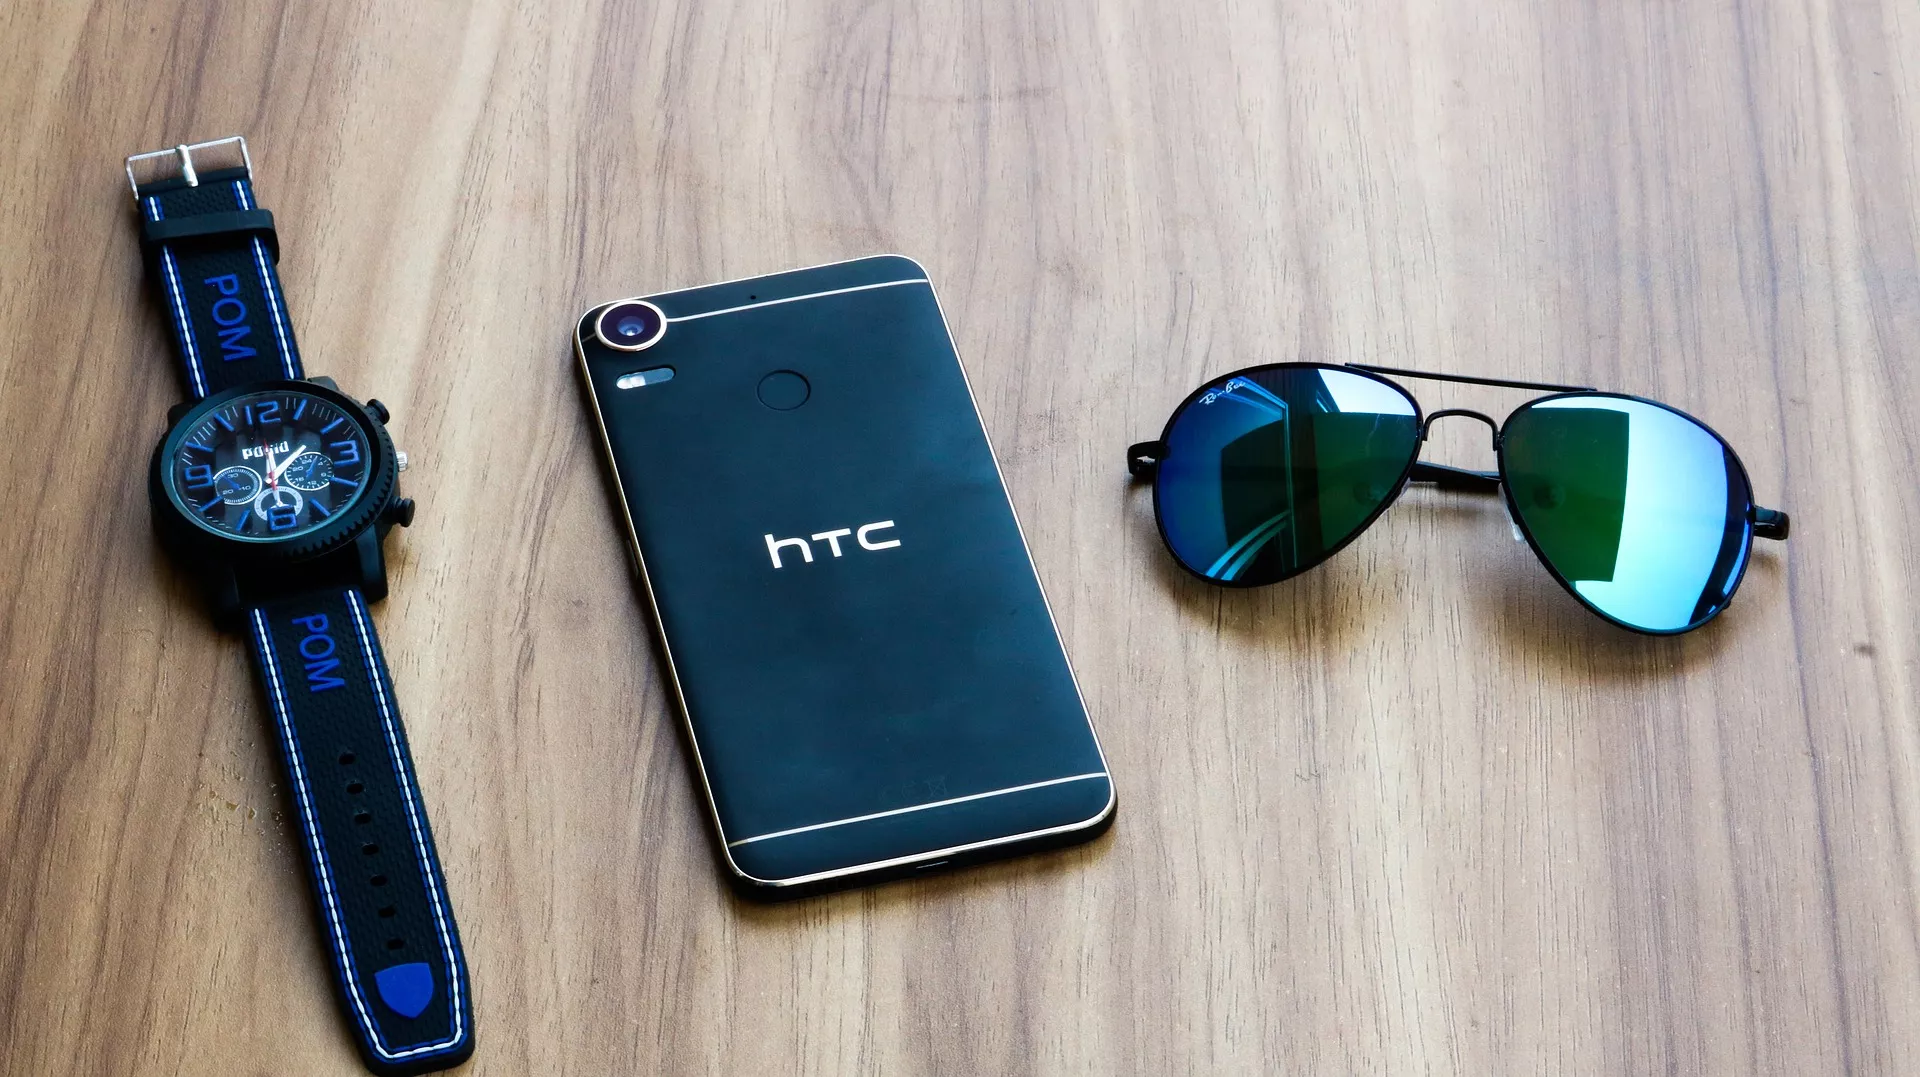 Volledig Bitcoin-nodes uitvoeren kan op nieuwe HTC-smartphone